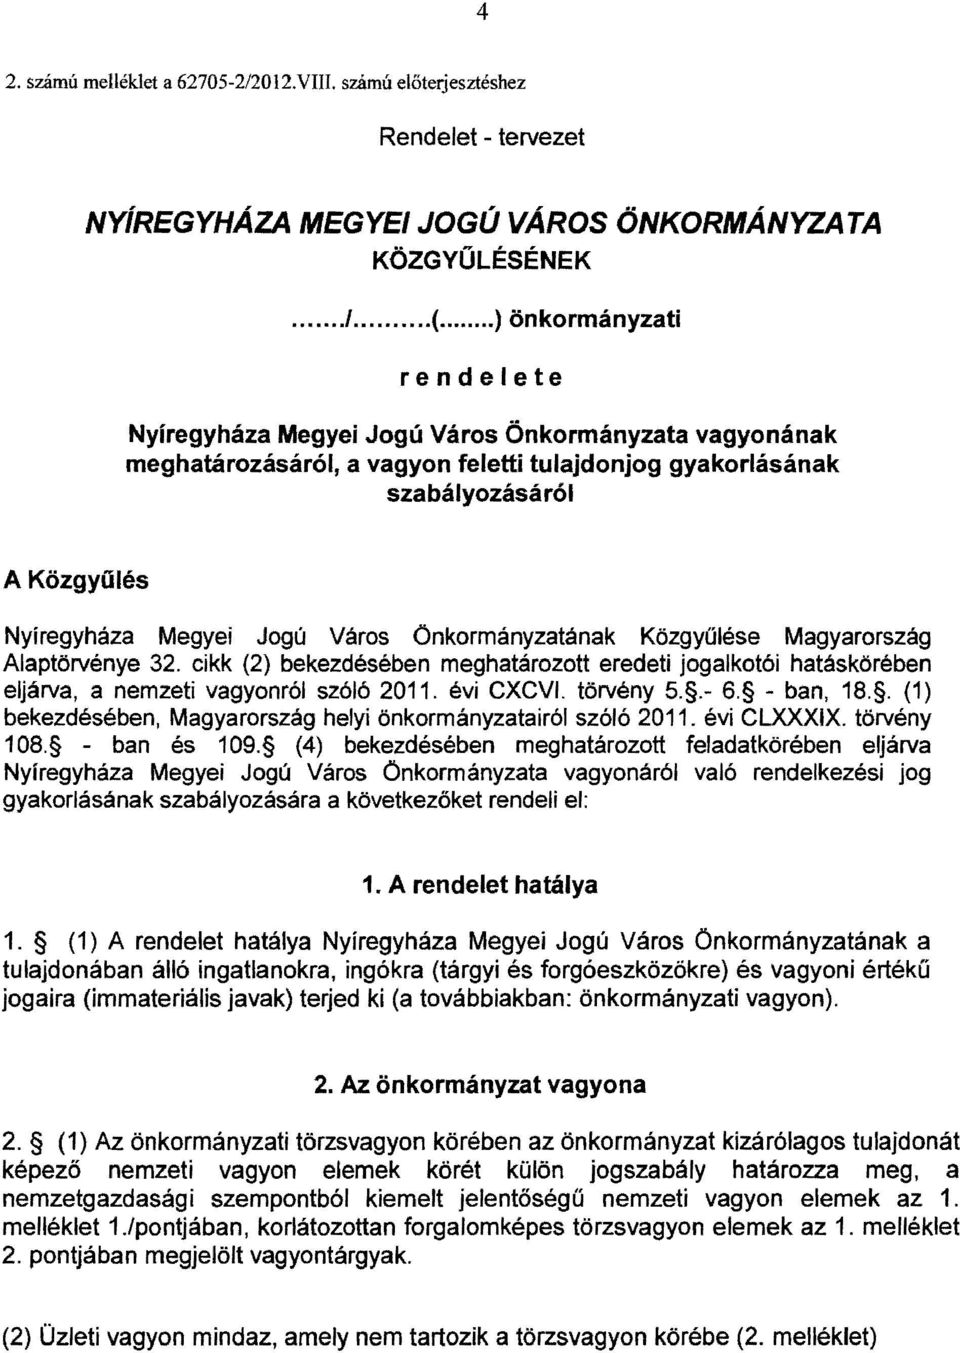 Város Onkormányzatának Közgyűlése Magyarország Alaptörvénye 32. cikk (2) bekezdésében meghatározott eredeti jogalkotói hatáskörében eljárva, a nemzeti vagyonról szóló 2011. évi CXCVI. törvény 5..- 6.